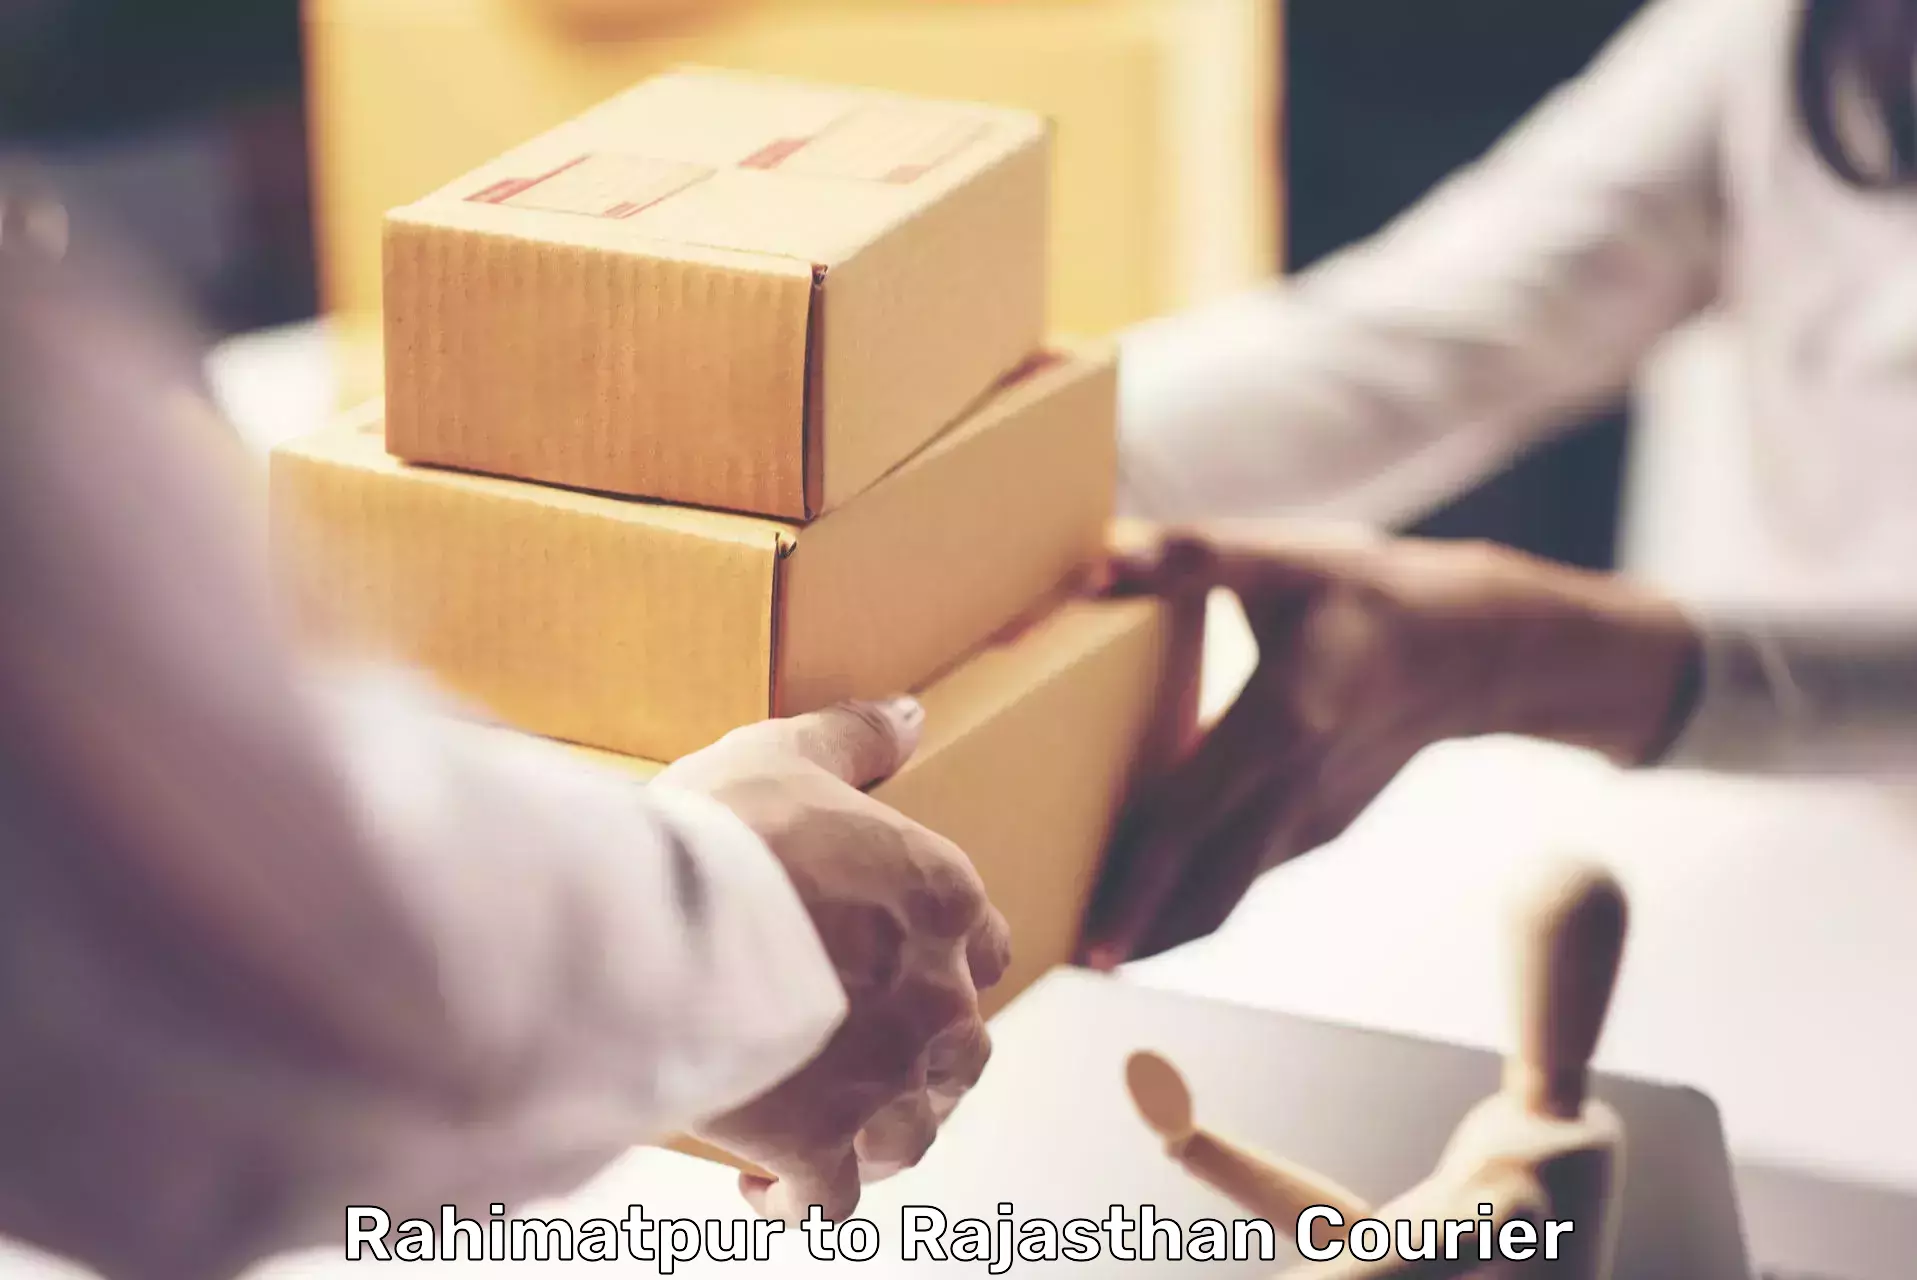 On-demand shipping options Rahimatpur to Ajmer